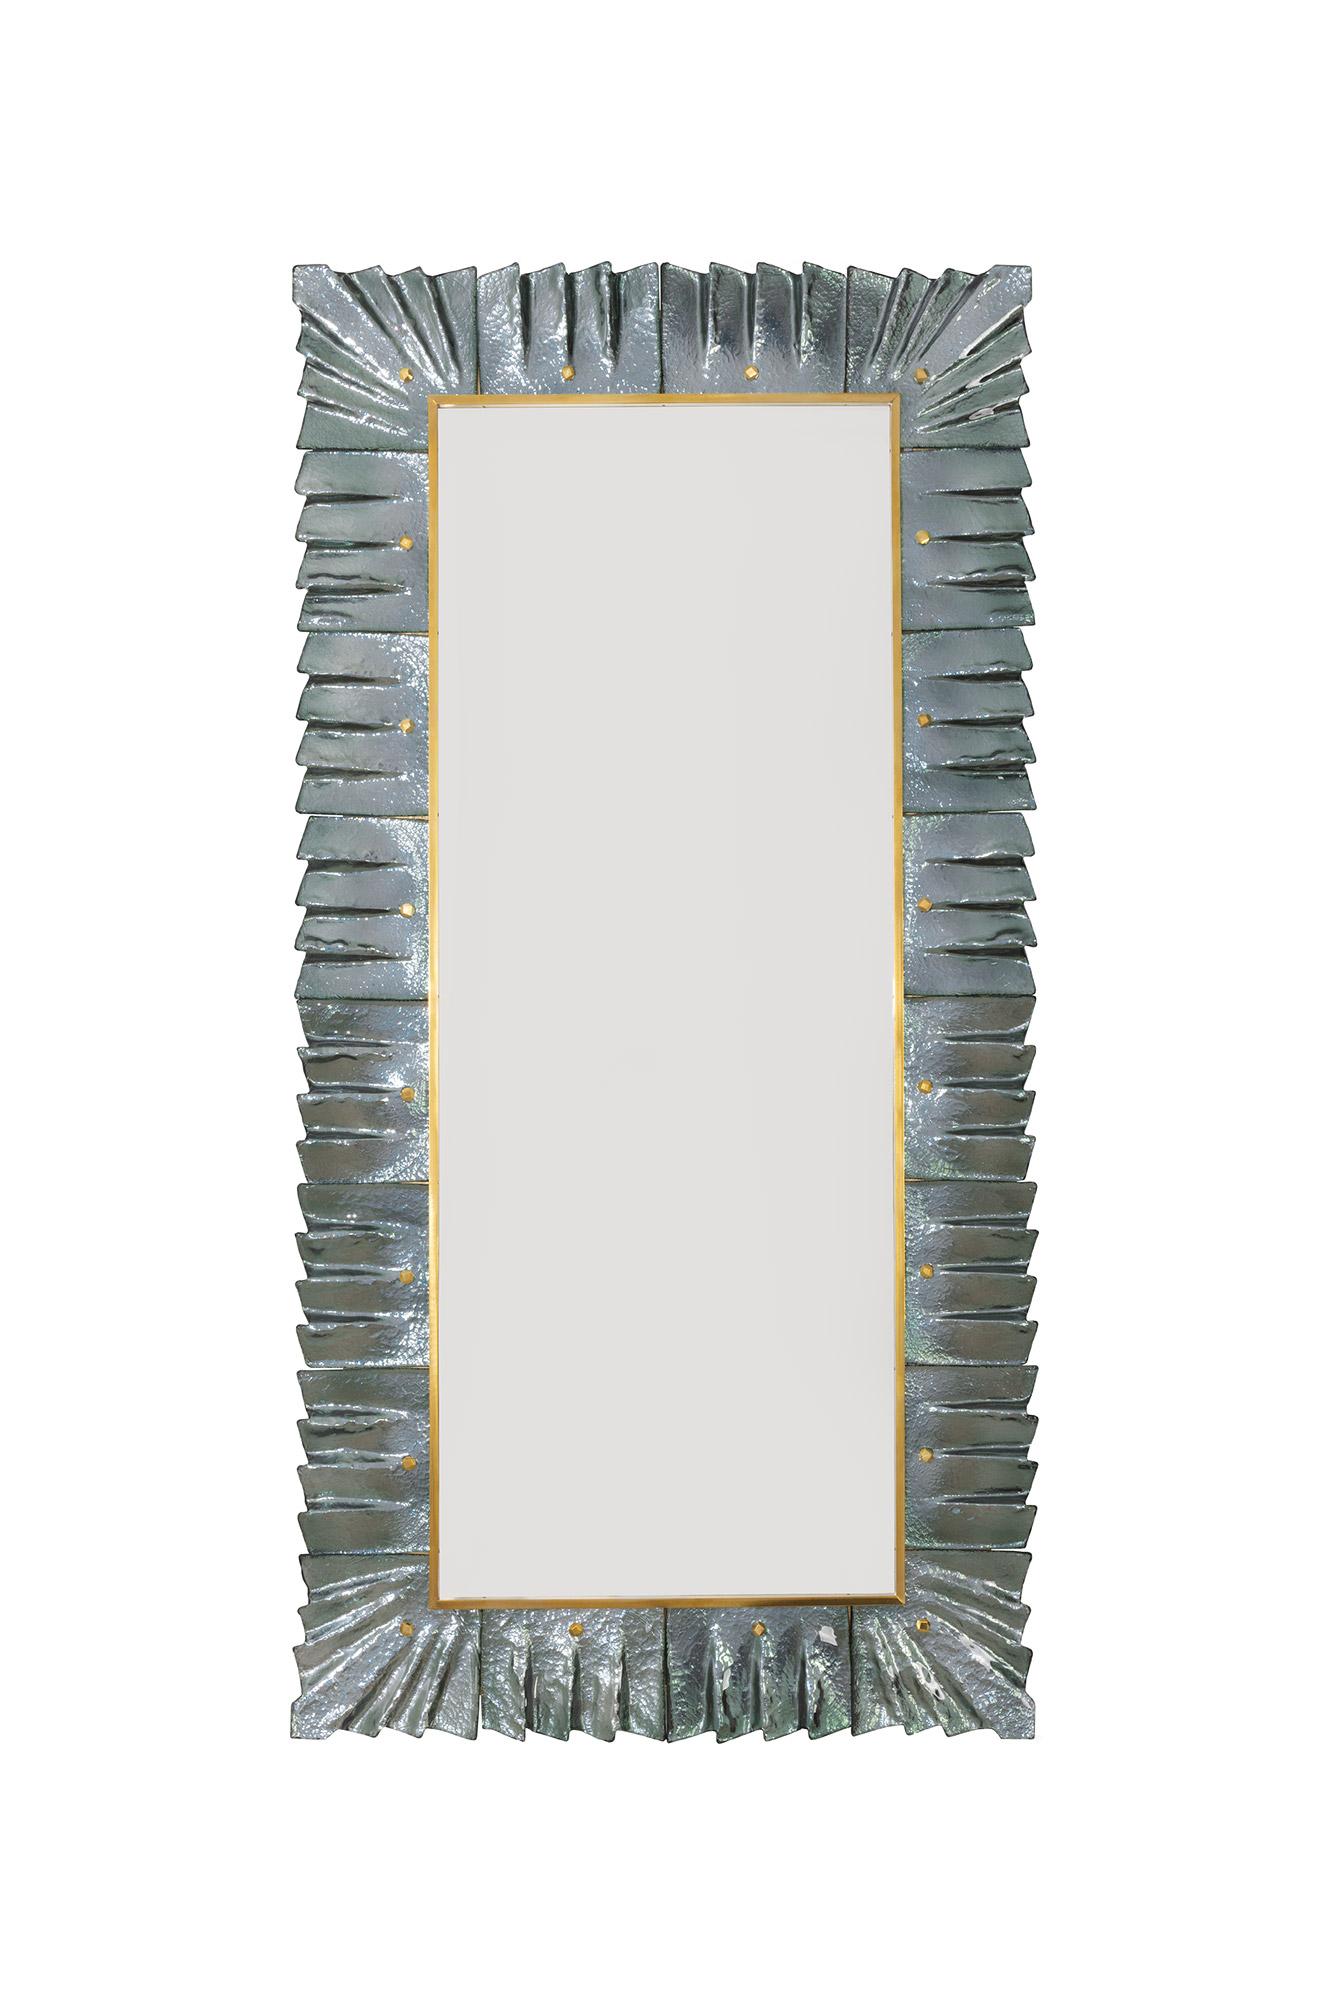  Grand miroir rectangulaire encadré en verre vert de Murano, en stock
 Plaque de miroir entourée de carreaux de verre ondulés de couleur vert de mer retenus par des cabochons en laiton.  Fabriqué à la main par une équipe d'artisans à Venise, en